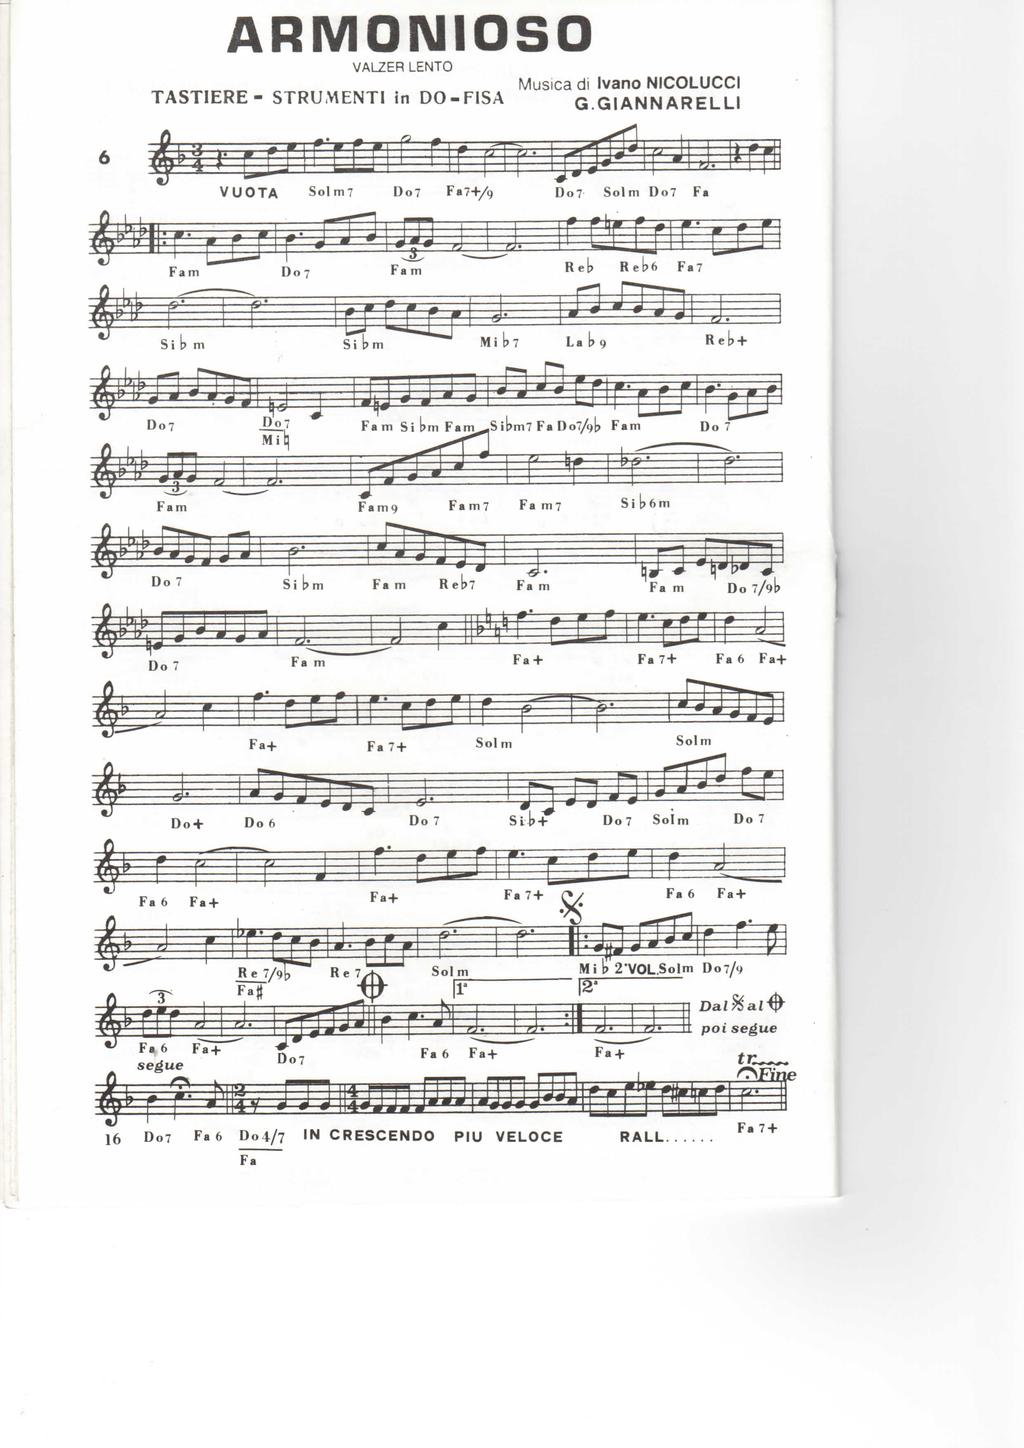 ARMONIOSO Musica di Ivano NICOLUCCI TASTIERE- STRUMENTI in DÒ-FISA G.GIANNARELLI VUOTA Solm? Do7 Fa7+/9 Do? Solm Do?